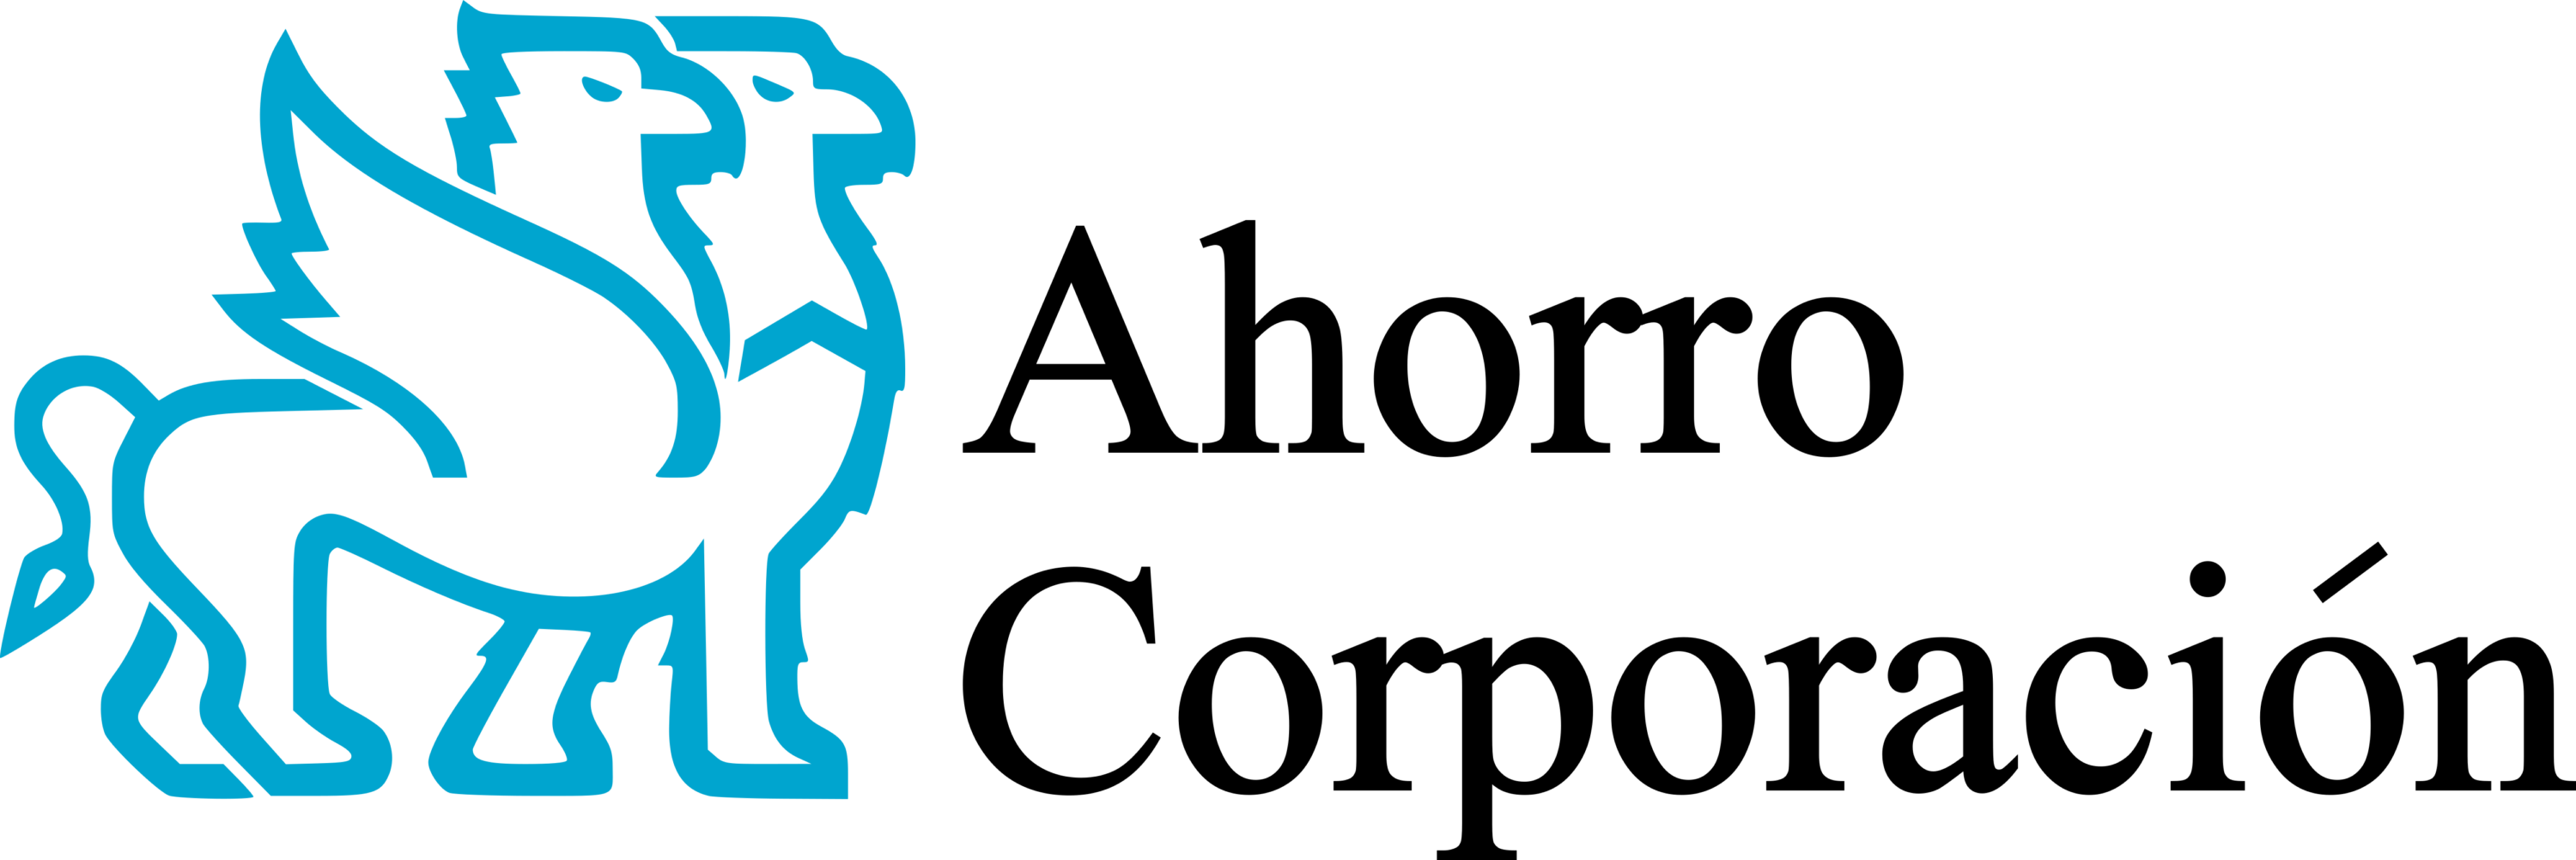 Ahorro Corporacion Logo